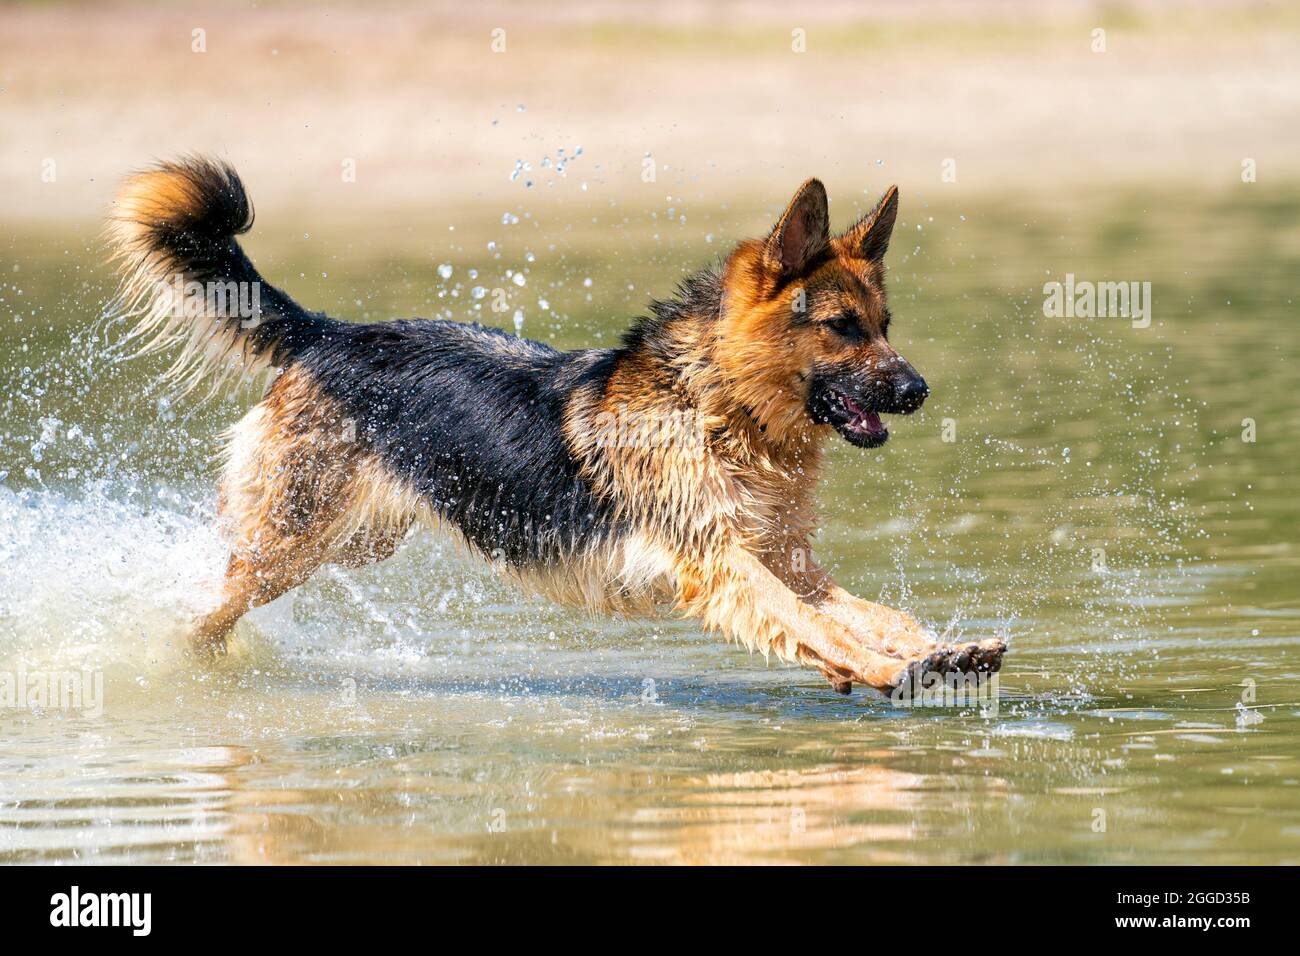 Giovane e felice Pastore tedesco, giocando in acqua. Il cane schizza e salta felicemente nel lago. Foto Stock